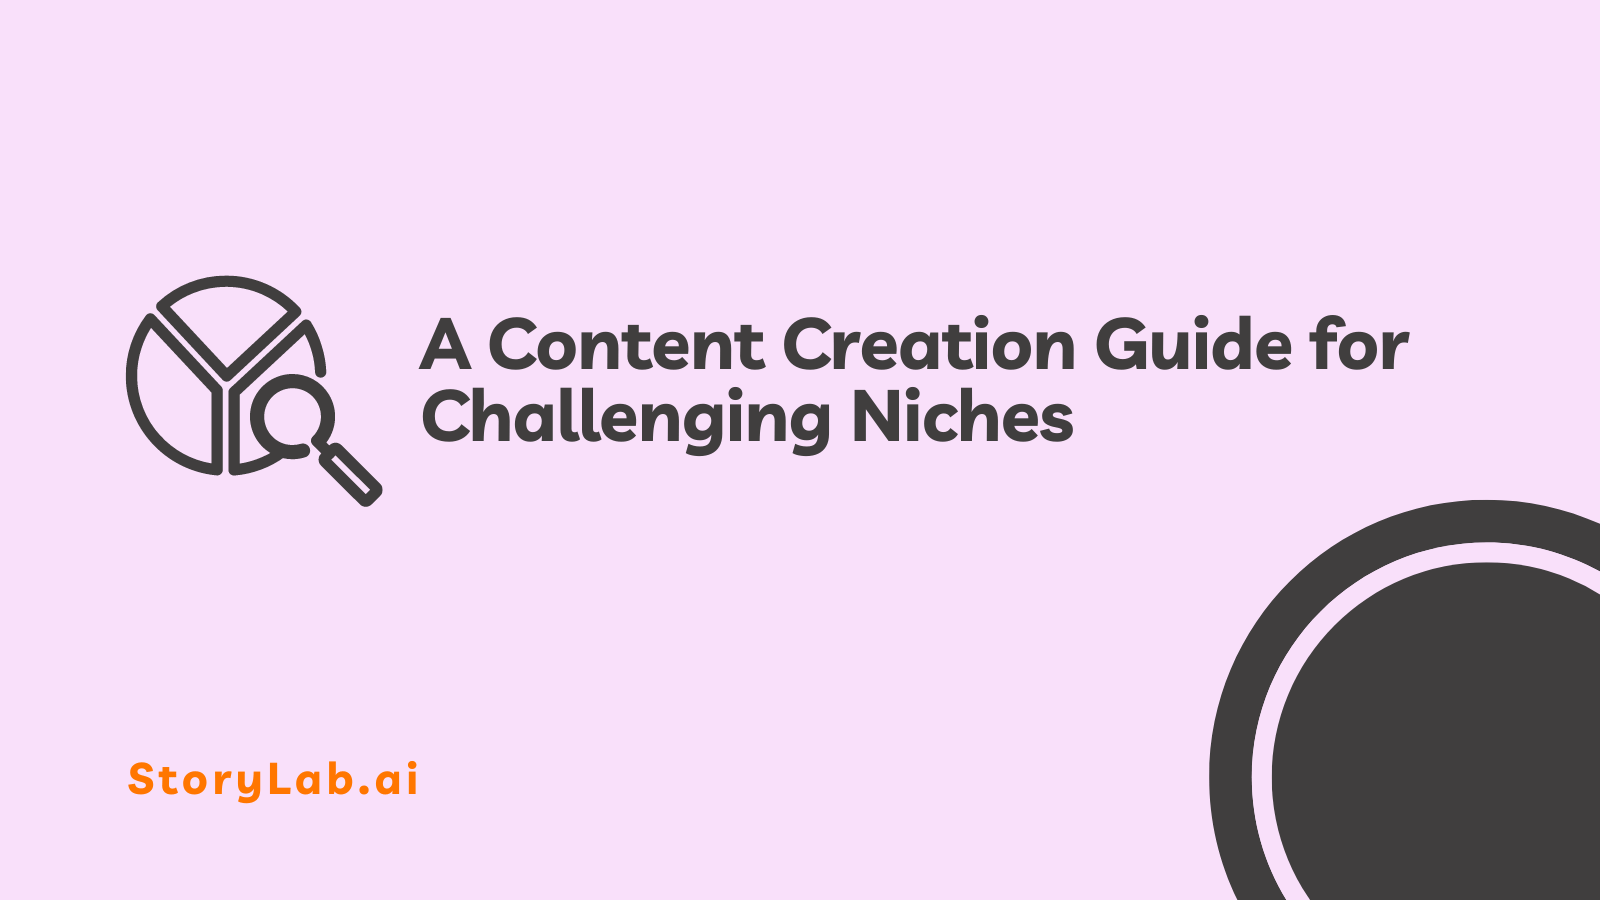 Una guía de creación de contenido para nichos desafiantes